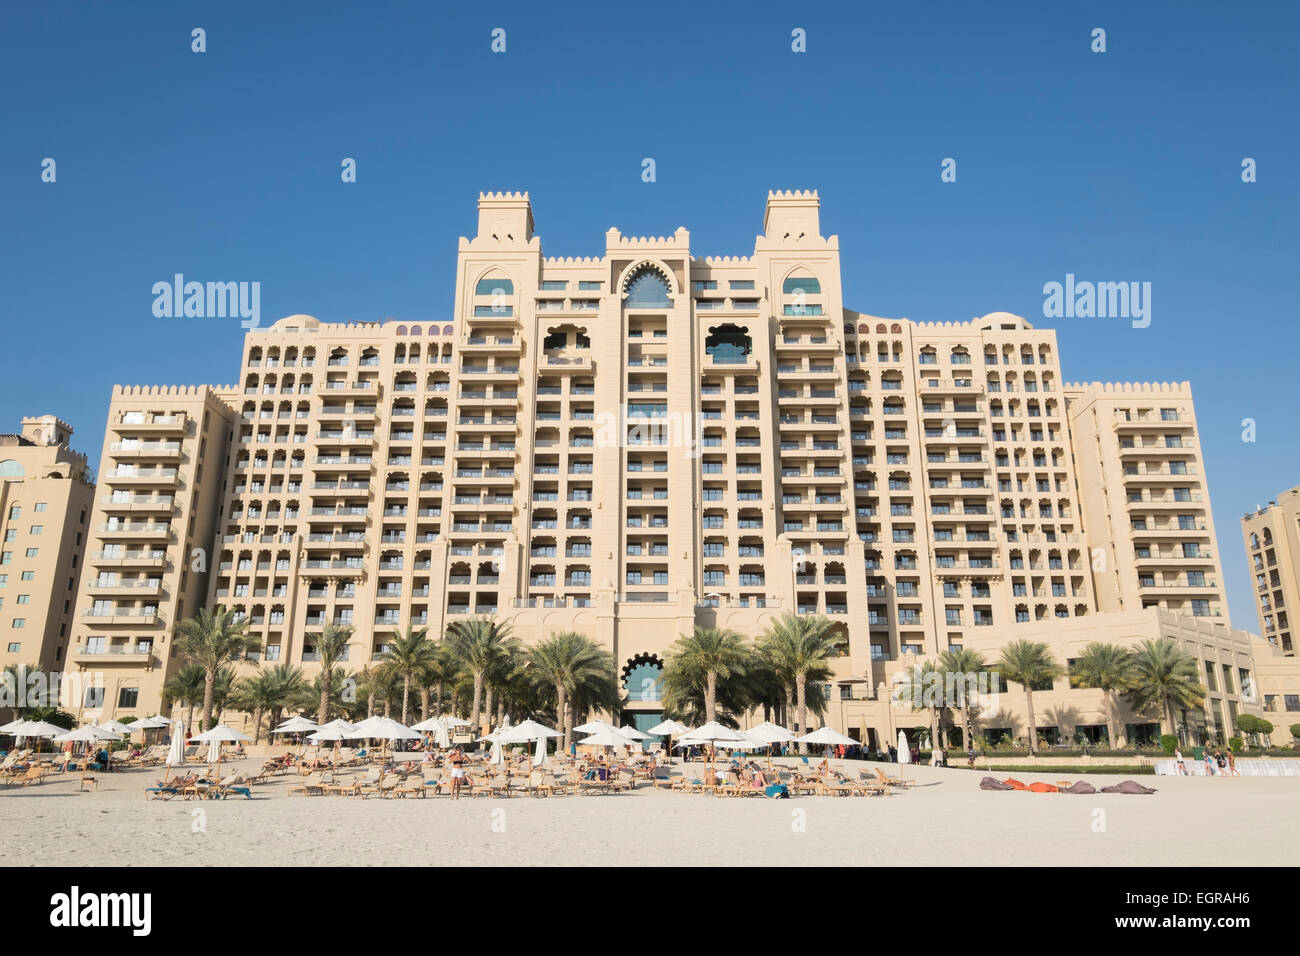 Vue extérieure de l'Hôtel Fairmont The Palm Hôtel de luxe de l'île artificielle de Palm Jumeirah à Dubai Emirats Arabes Unis Banque D'Images